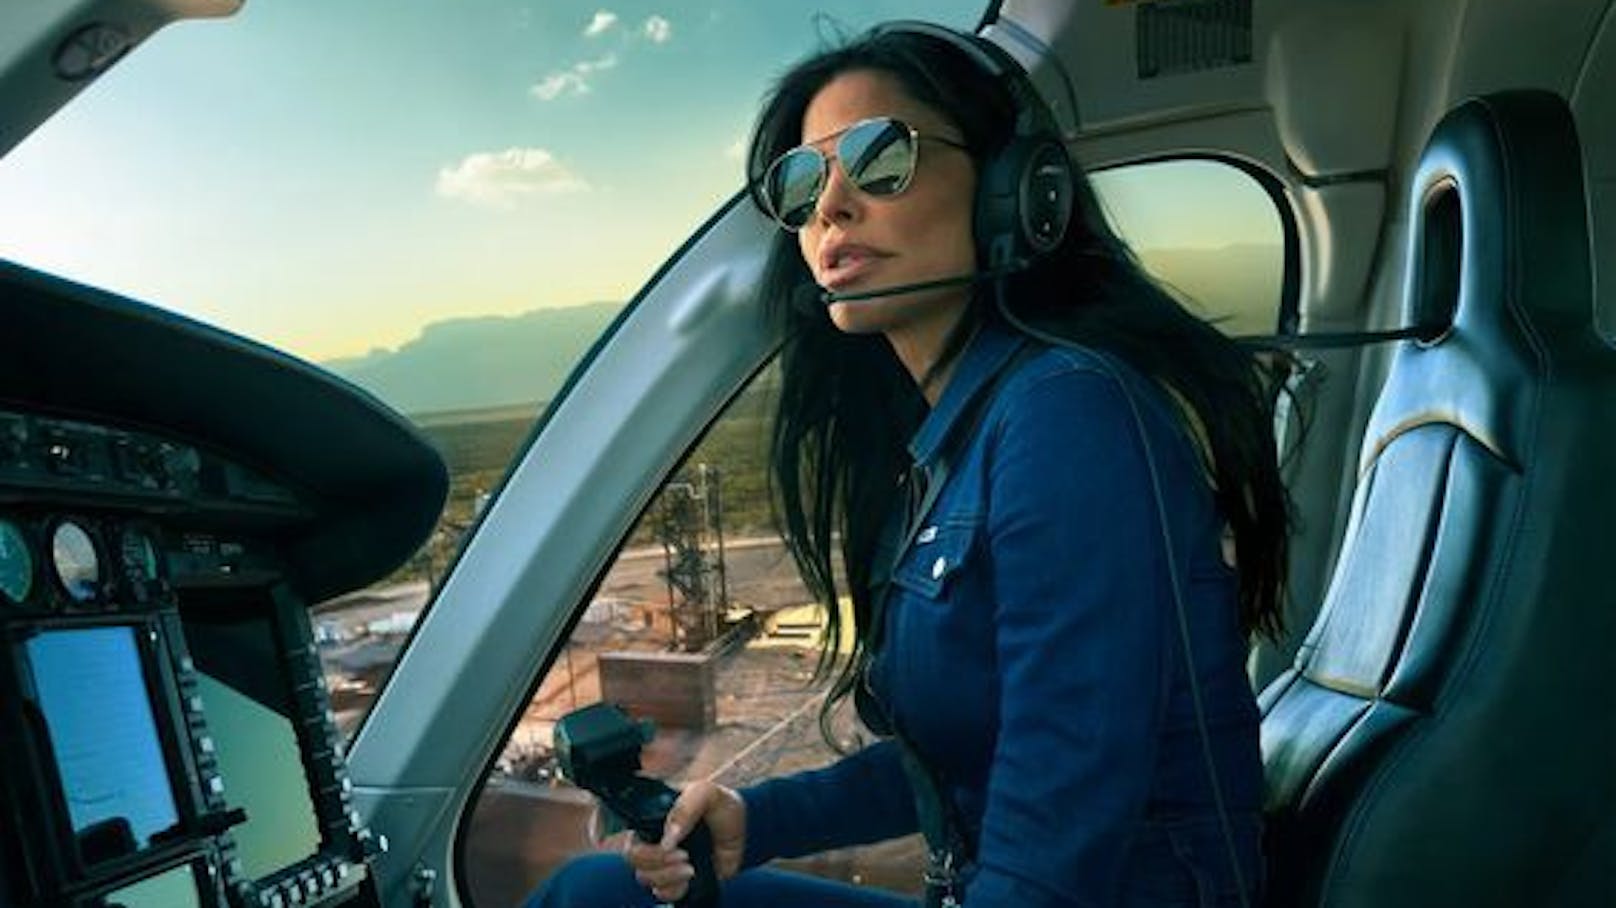 Präsentiert sich als Hubschrauber-Pilotin mit Ambitionen ins All zu fliegen: Lauren Sánchez.